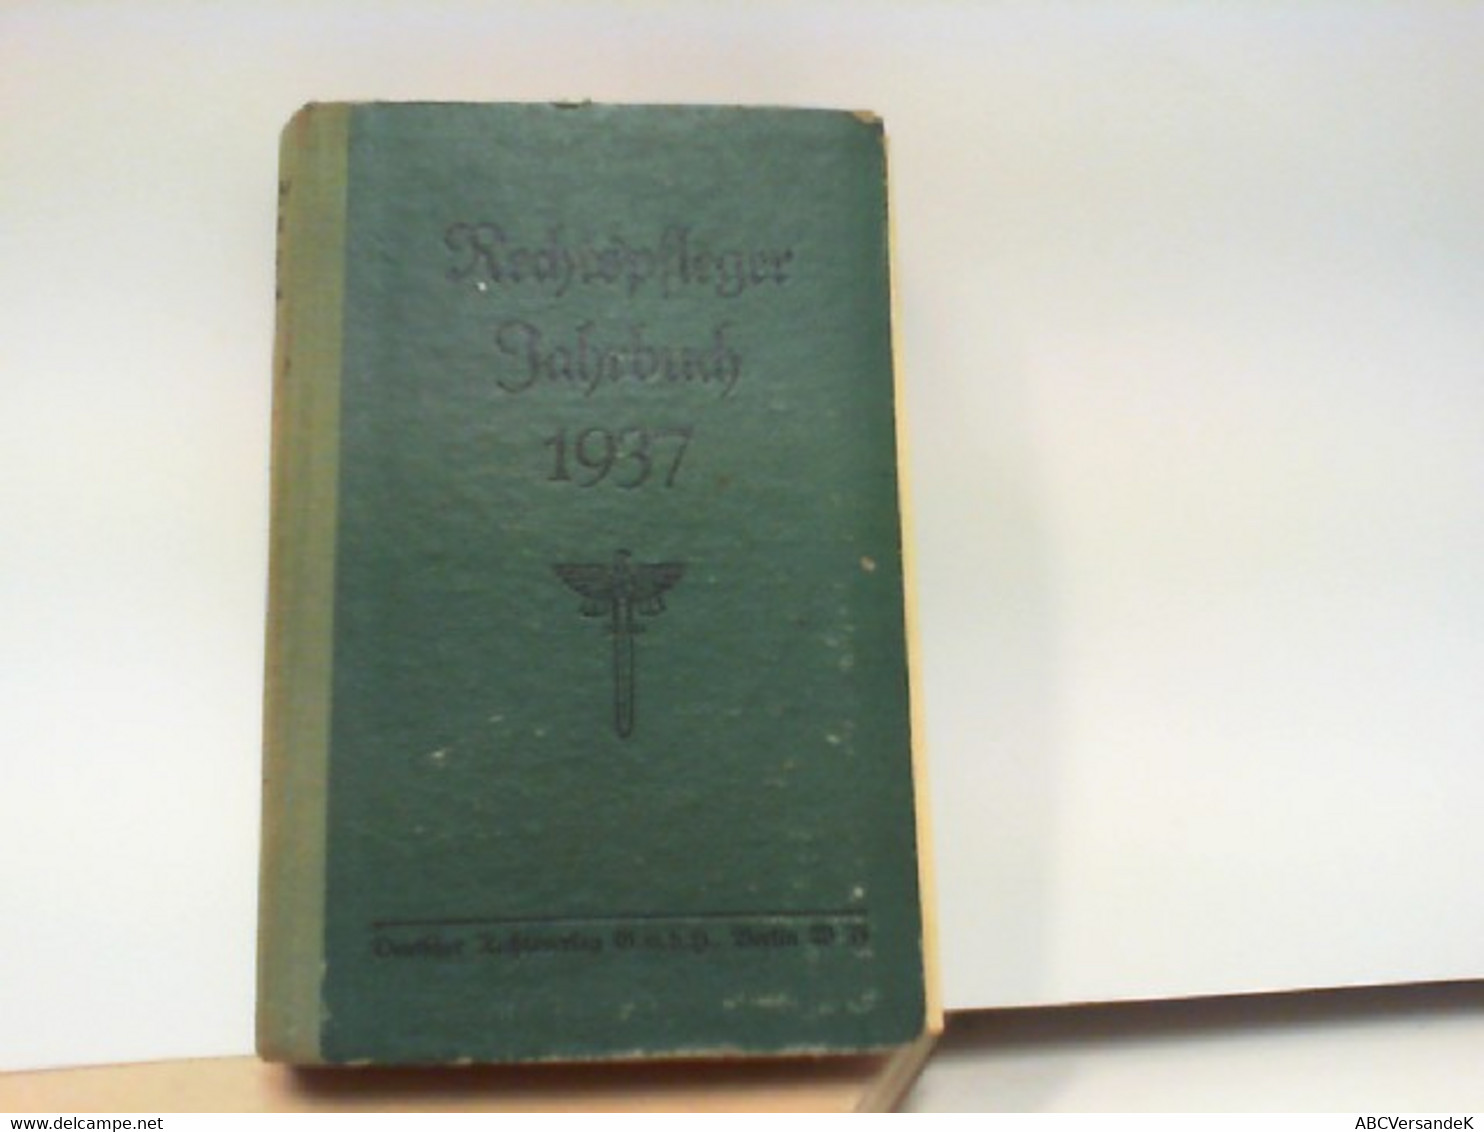 Rechtspfleger Jahrbuch 1937 - Law